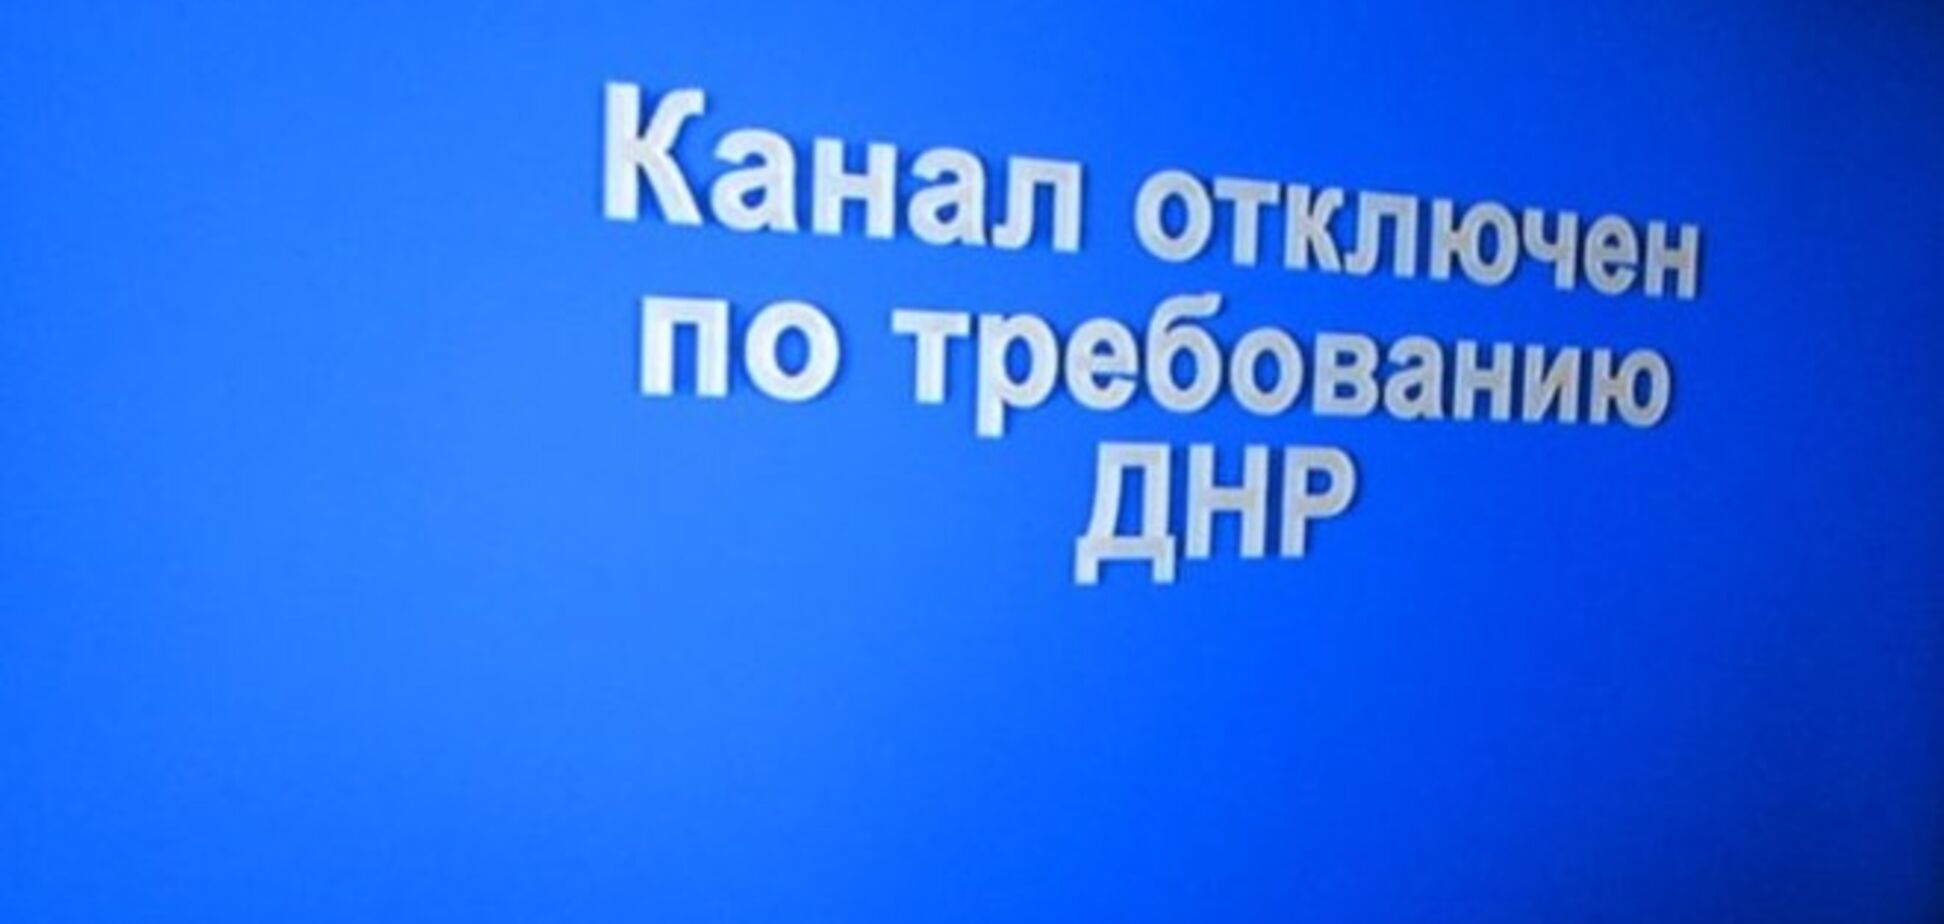 Українські телеканали в Донецьку відключені 'на вимогу ДНР'